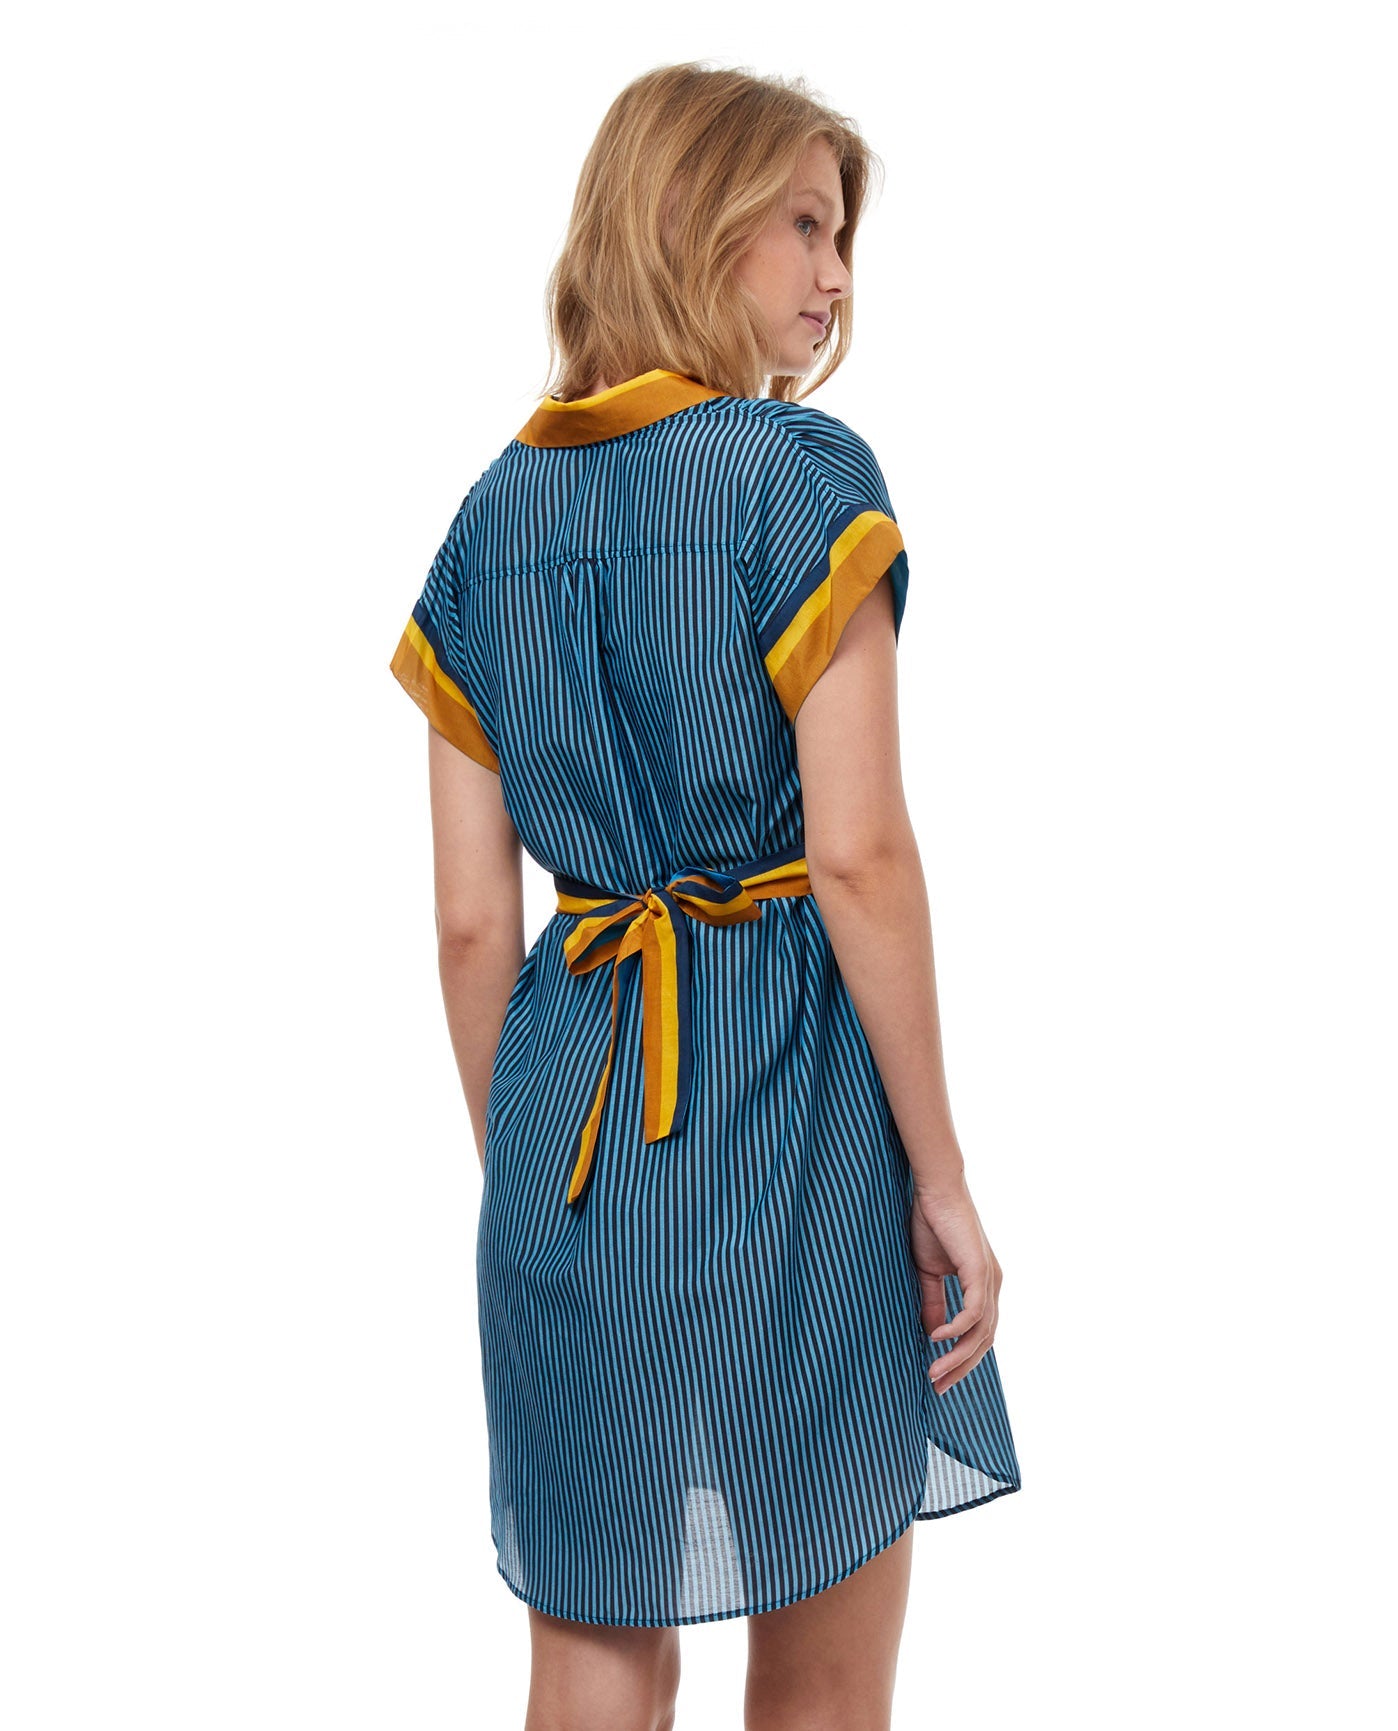 Luma Stripes of Light Cover Up Shirt Dress with Tie | Dress | Gottex ...